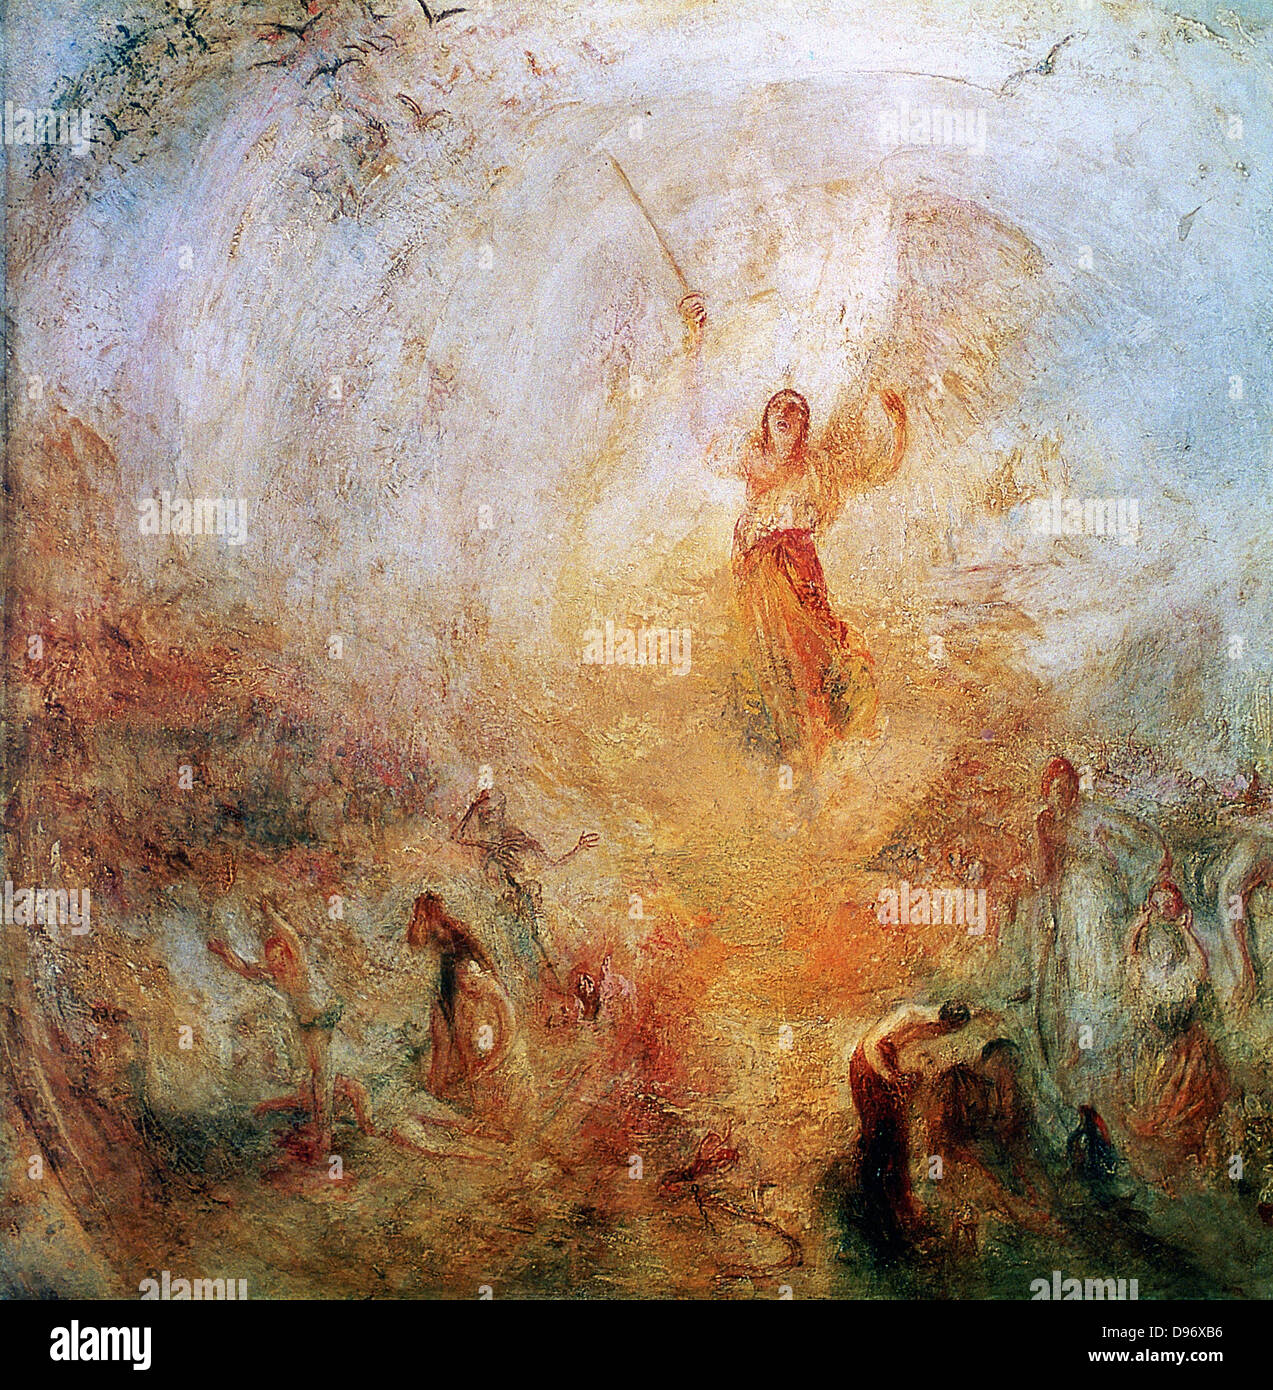 L'Ange debout dans le soleil' c1846. Joseph Mallord William Turner (1775-1851) peintre anglais. Huile sur toile. Banque D'Images